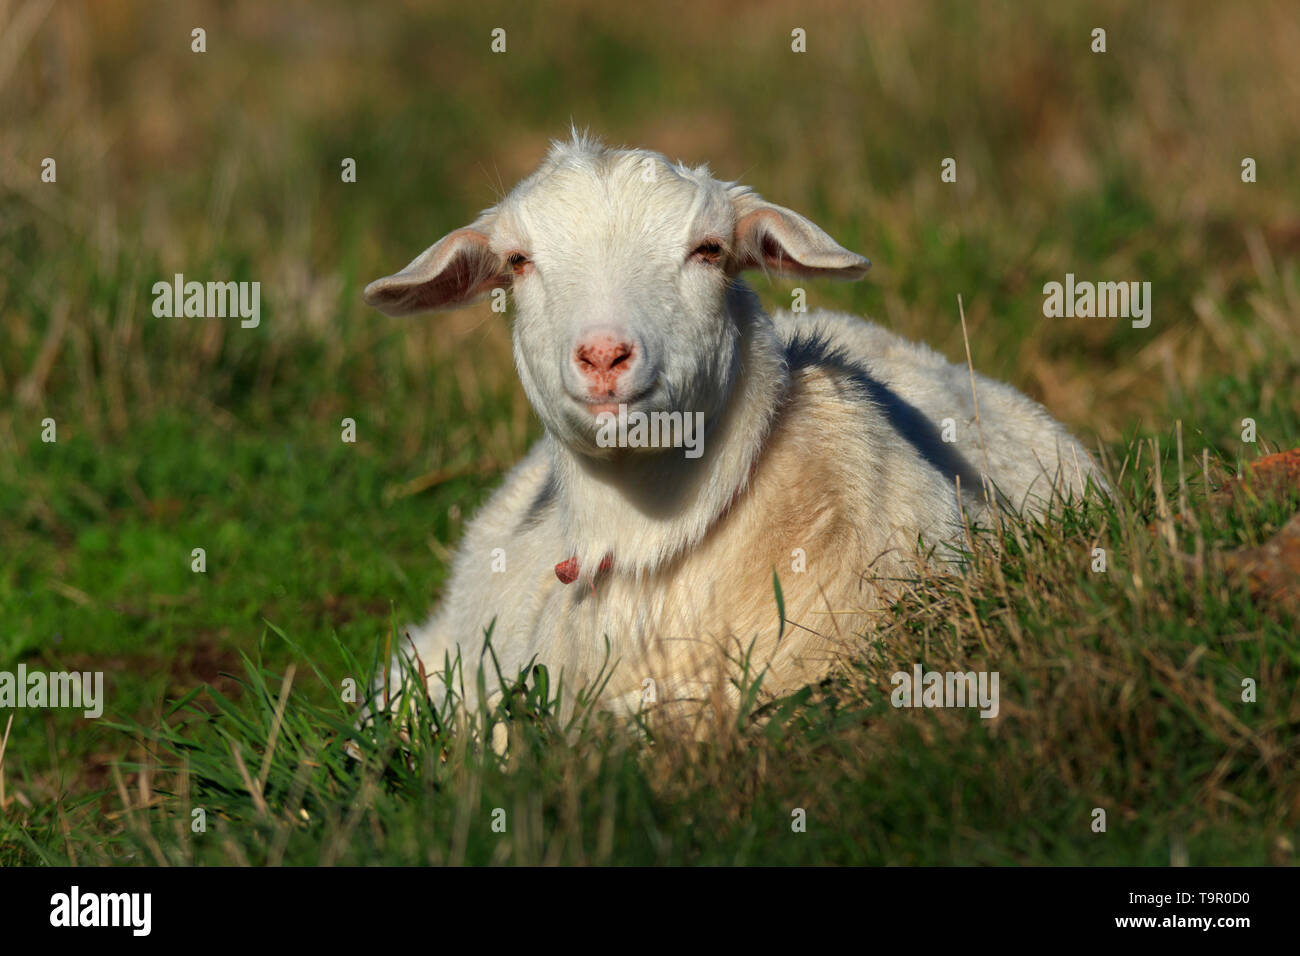 Carino bianco giovane capra domestica seduti in un prato verde paddock. Foto Stock